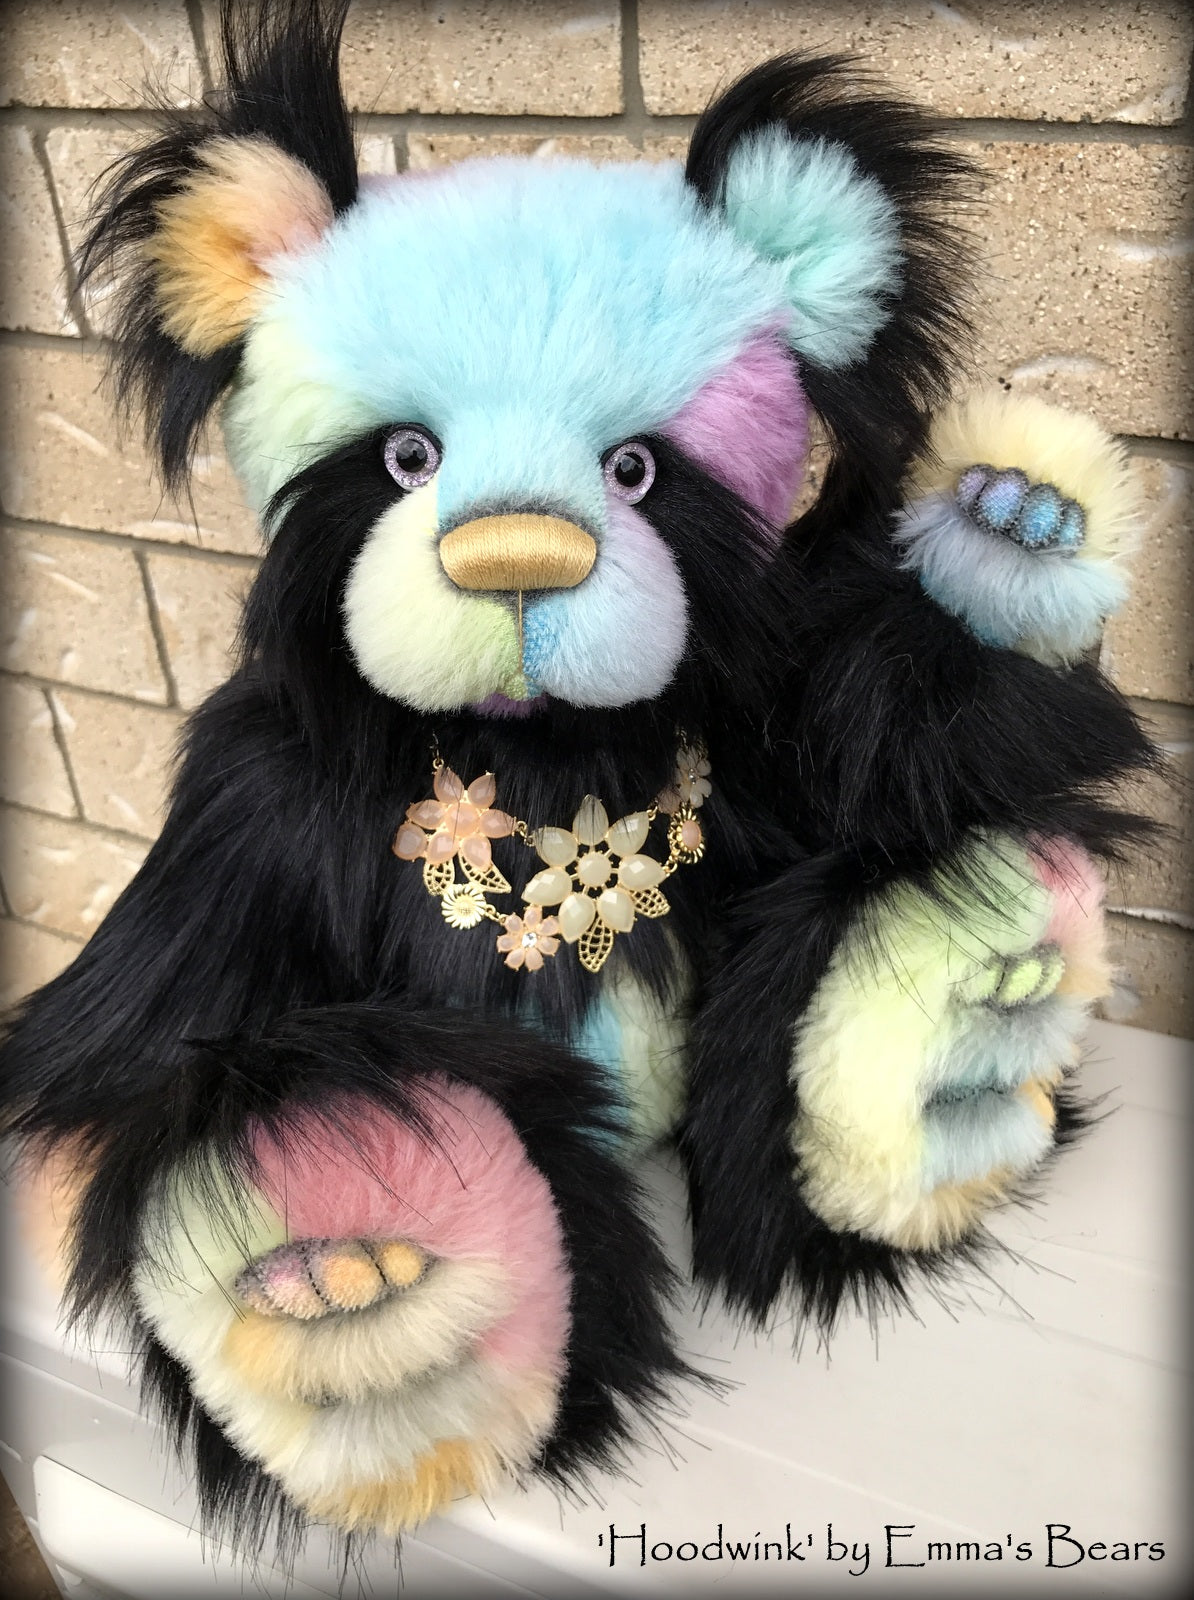 Hoodwink - 19" rainbow alpaca and faux fur artist bear by Emma's Bears  - OOAK